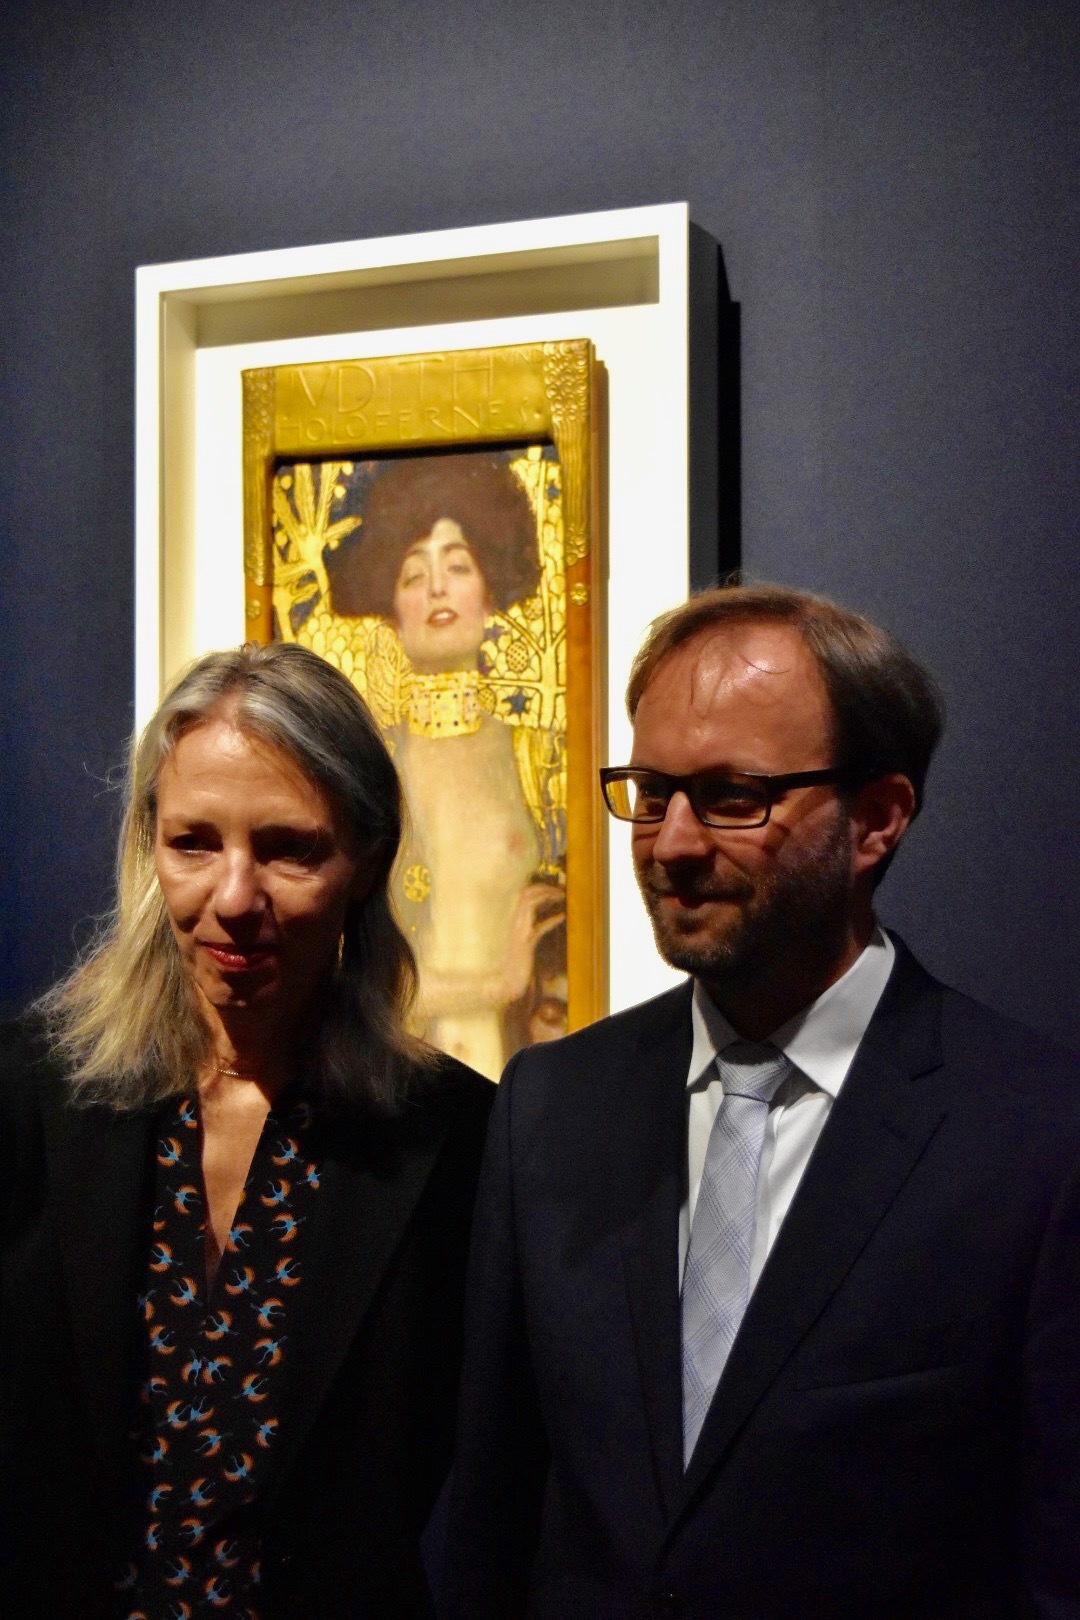 ベルヴェデーレ宮オーストリア絵画館 館長のステラ・ローリッグ氏（左）と、同館学芸員のマークス・フェリンガー氏（右）